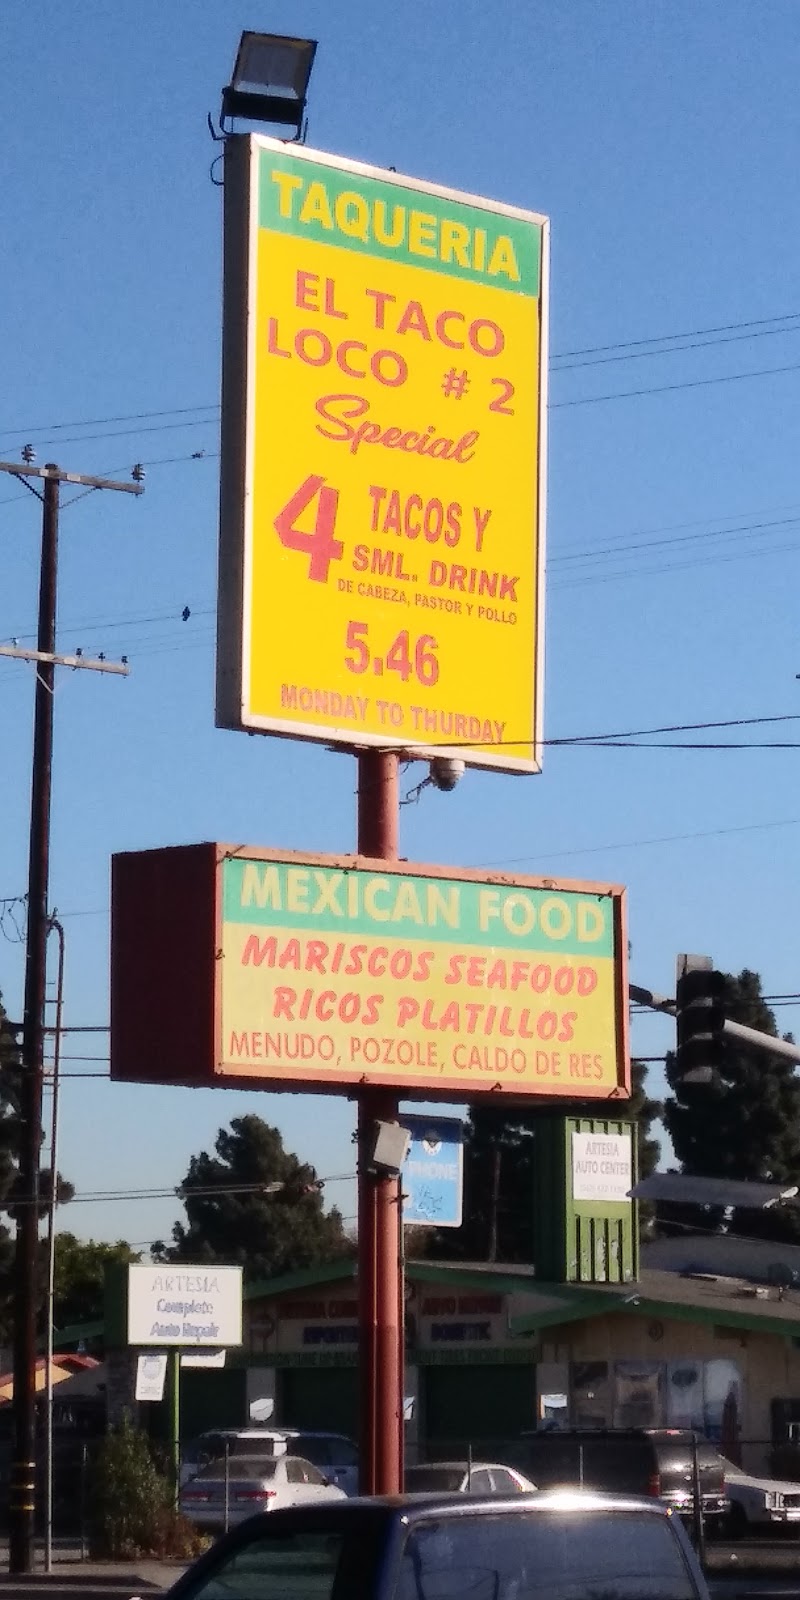 El Taco Loco # 2 | 1541 E Artesia Blvd, Long Beach, CA 90805, USA | Phone: (562) 422-1152